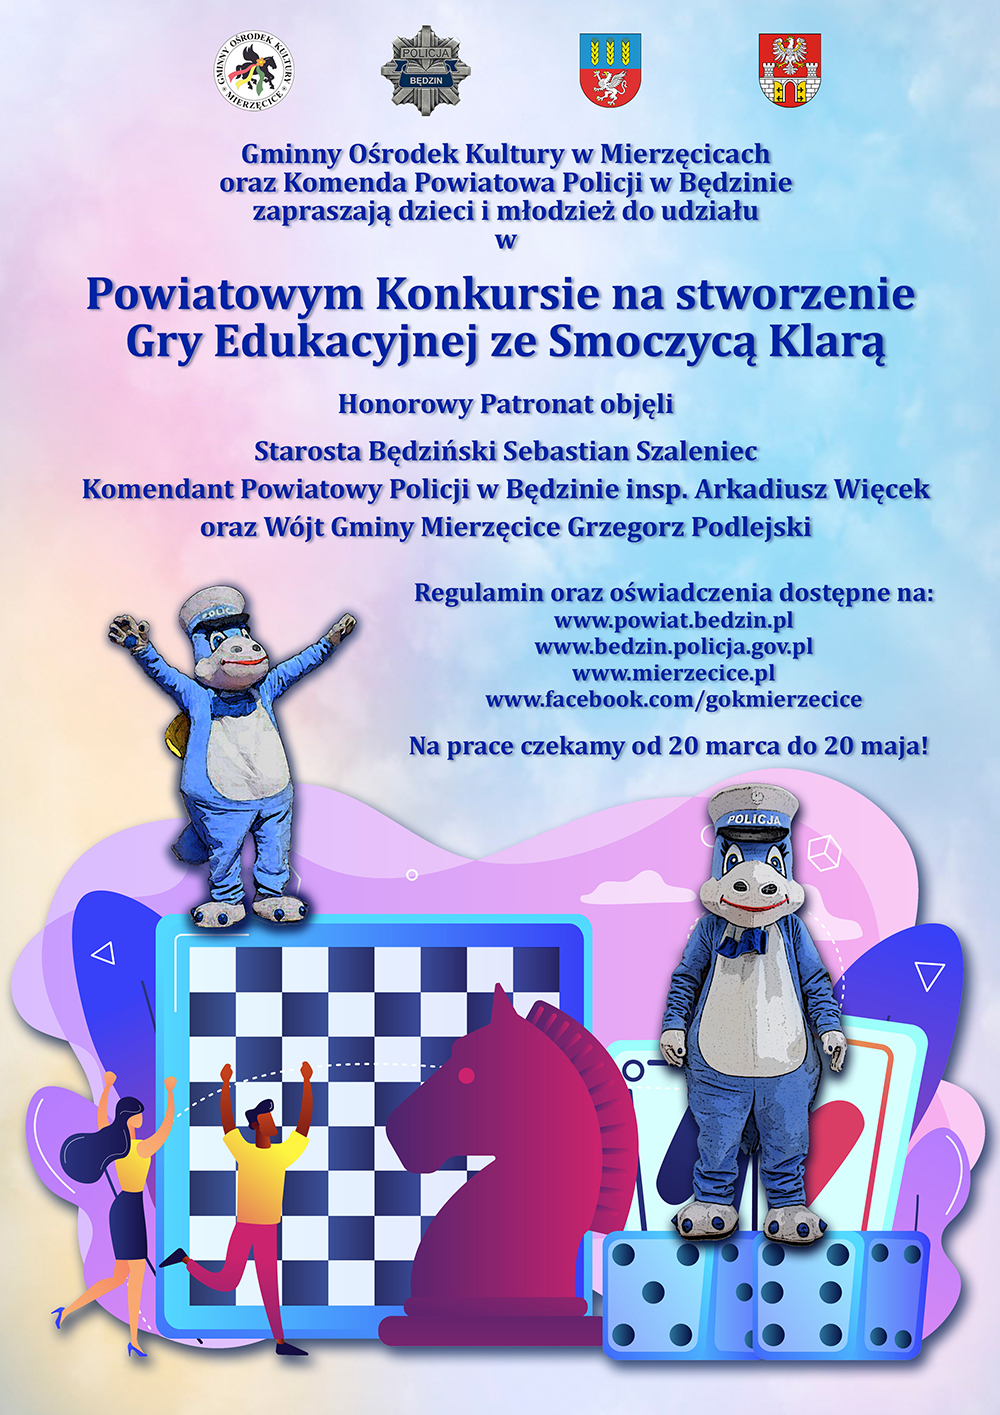 Plakat promujący Powiatowy Konkurs na stworzenie gry edukacyjnej ze smoczycą Klarą